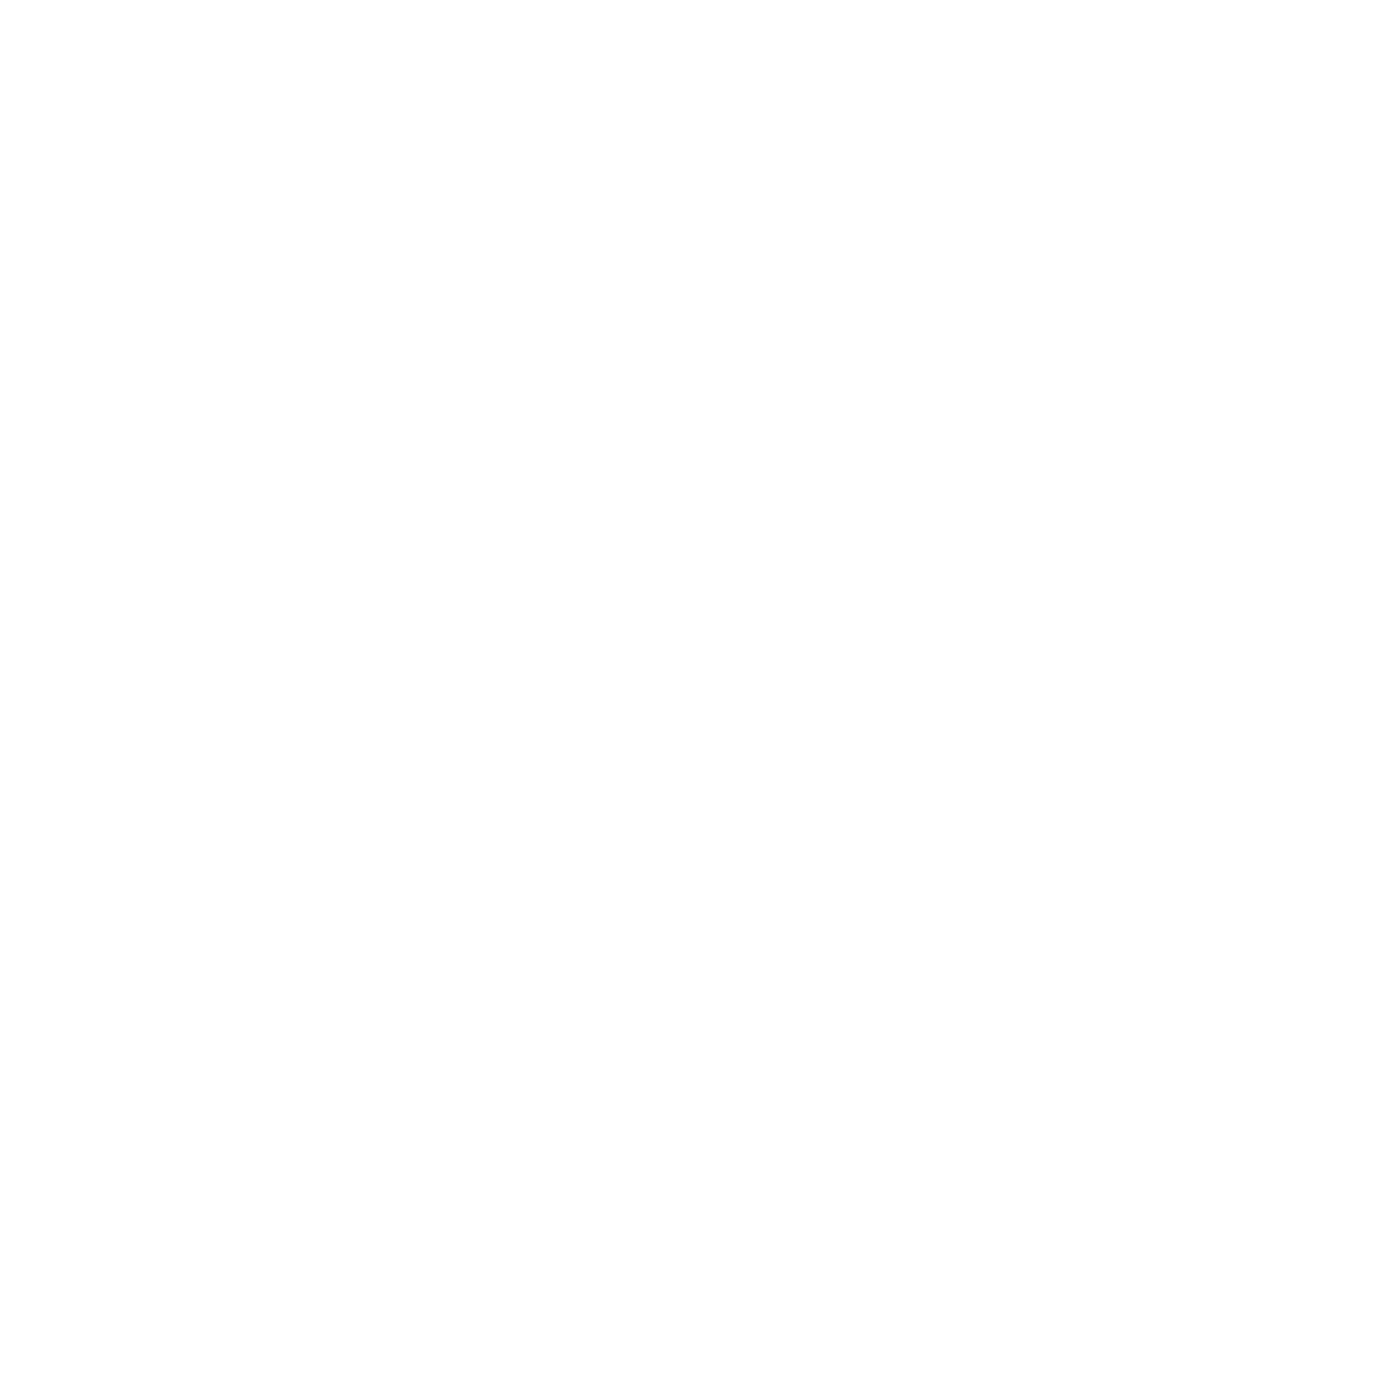 Chippies Corner